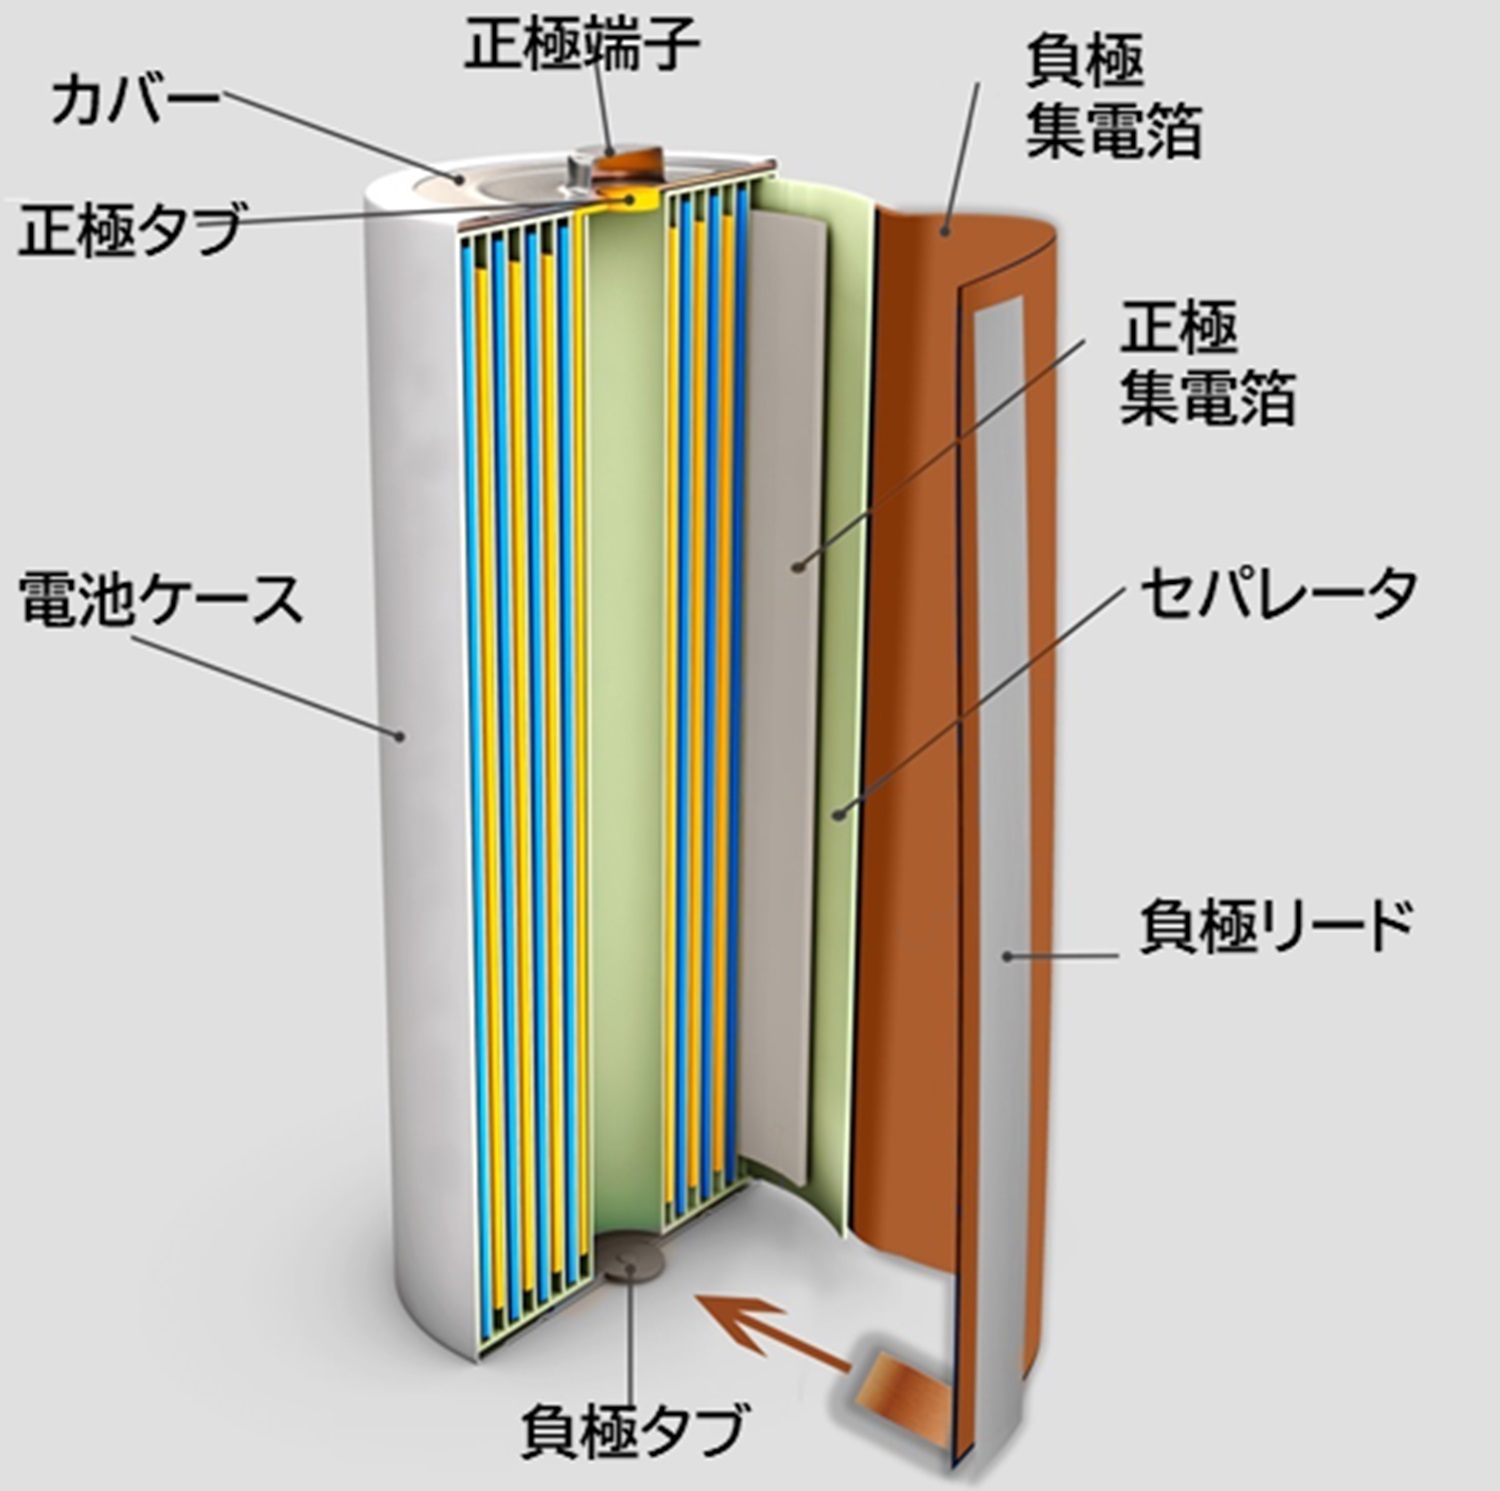 円筒電池リードタブの導電性向上｜バイメタル・ジャパン株式会社